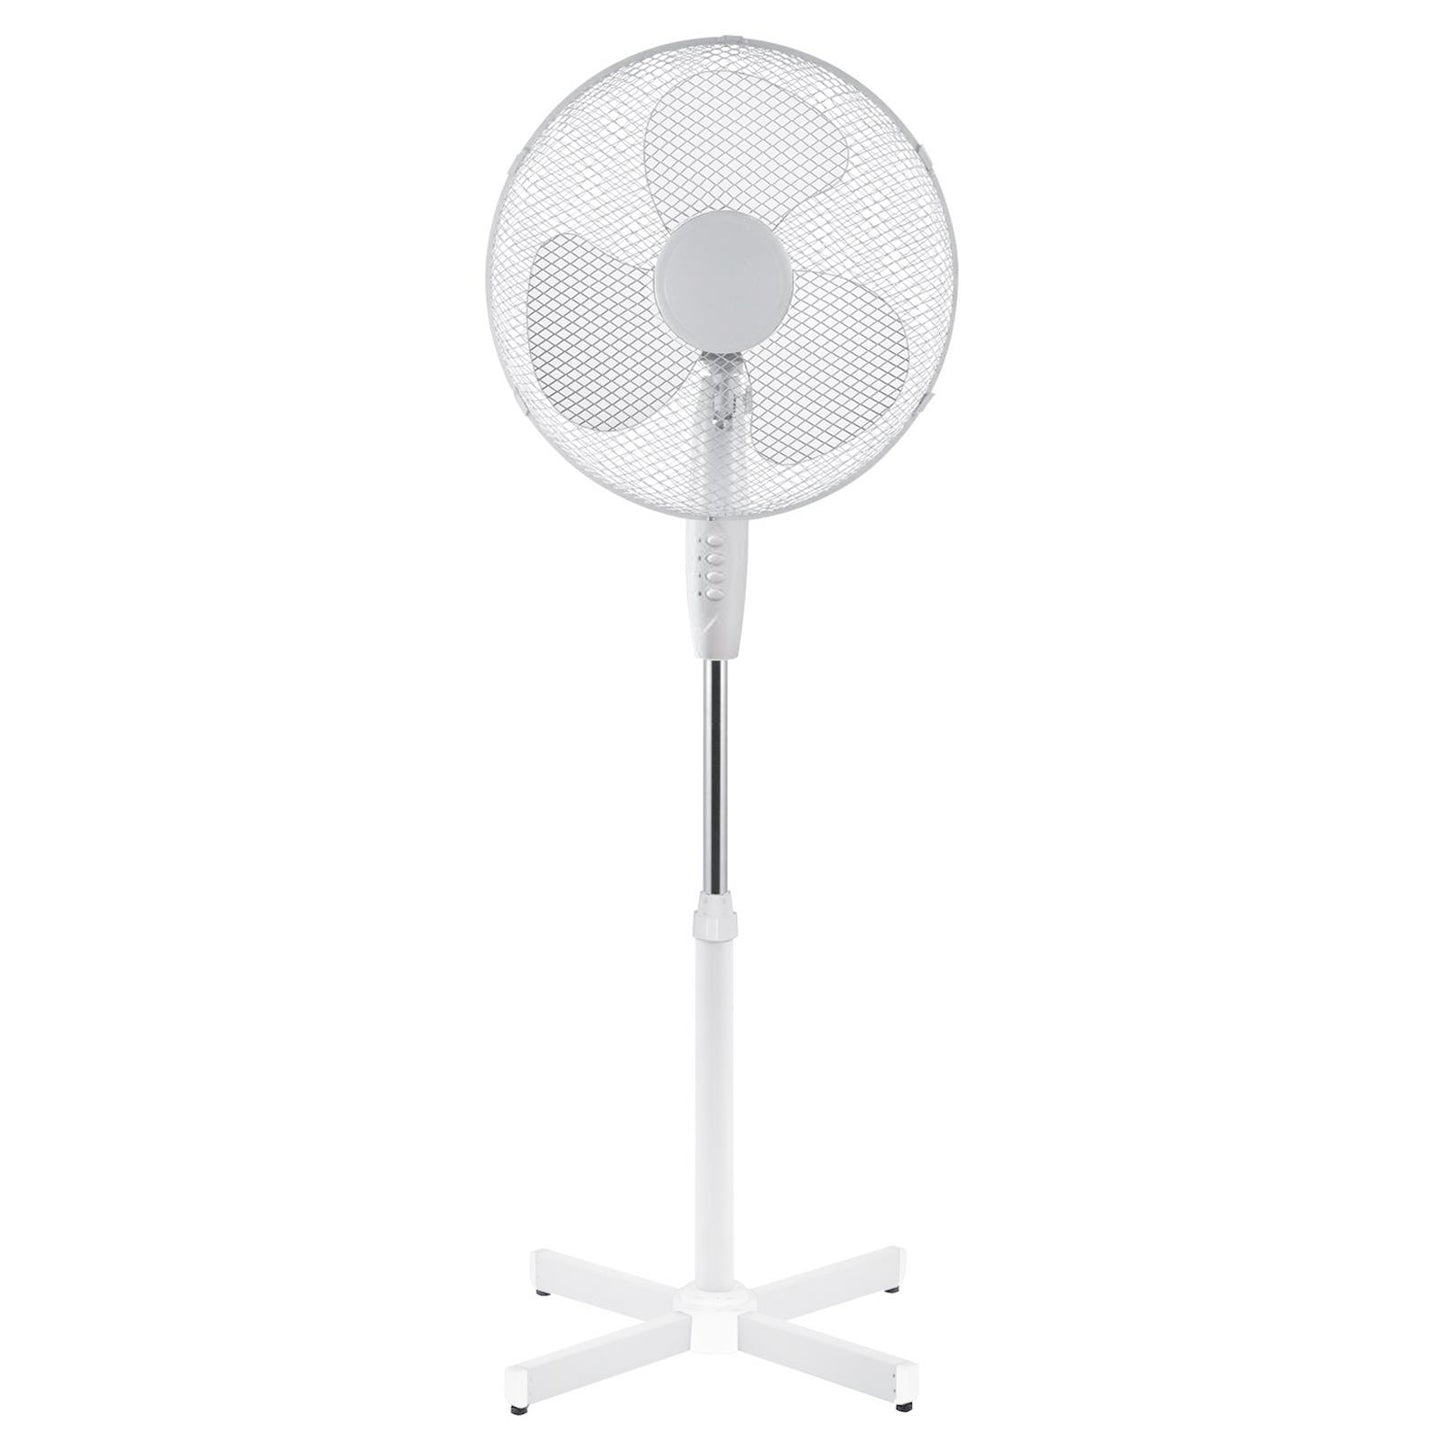 Oscillating Fans, Pedestal Fans, Tall Cooling Fans